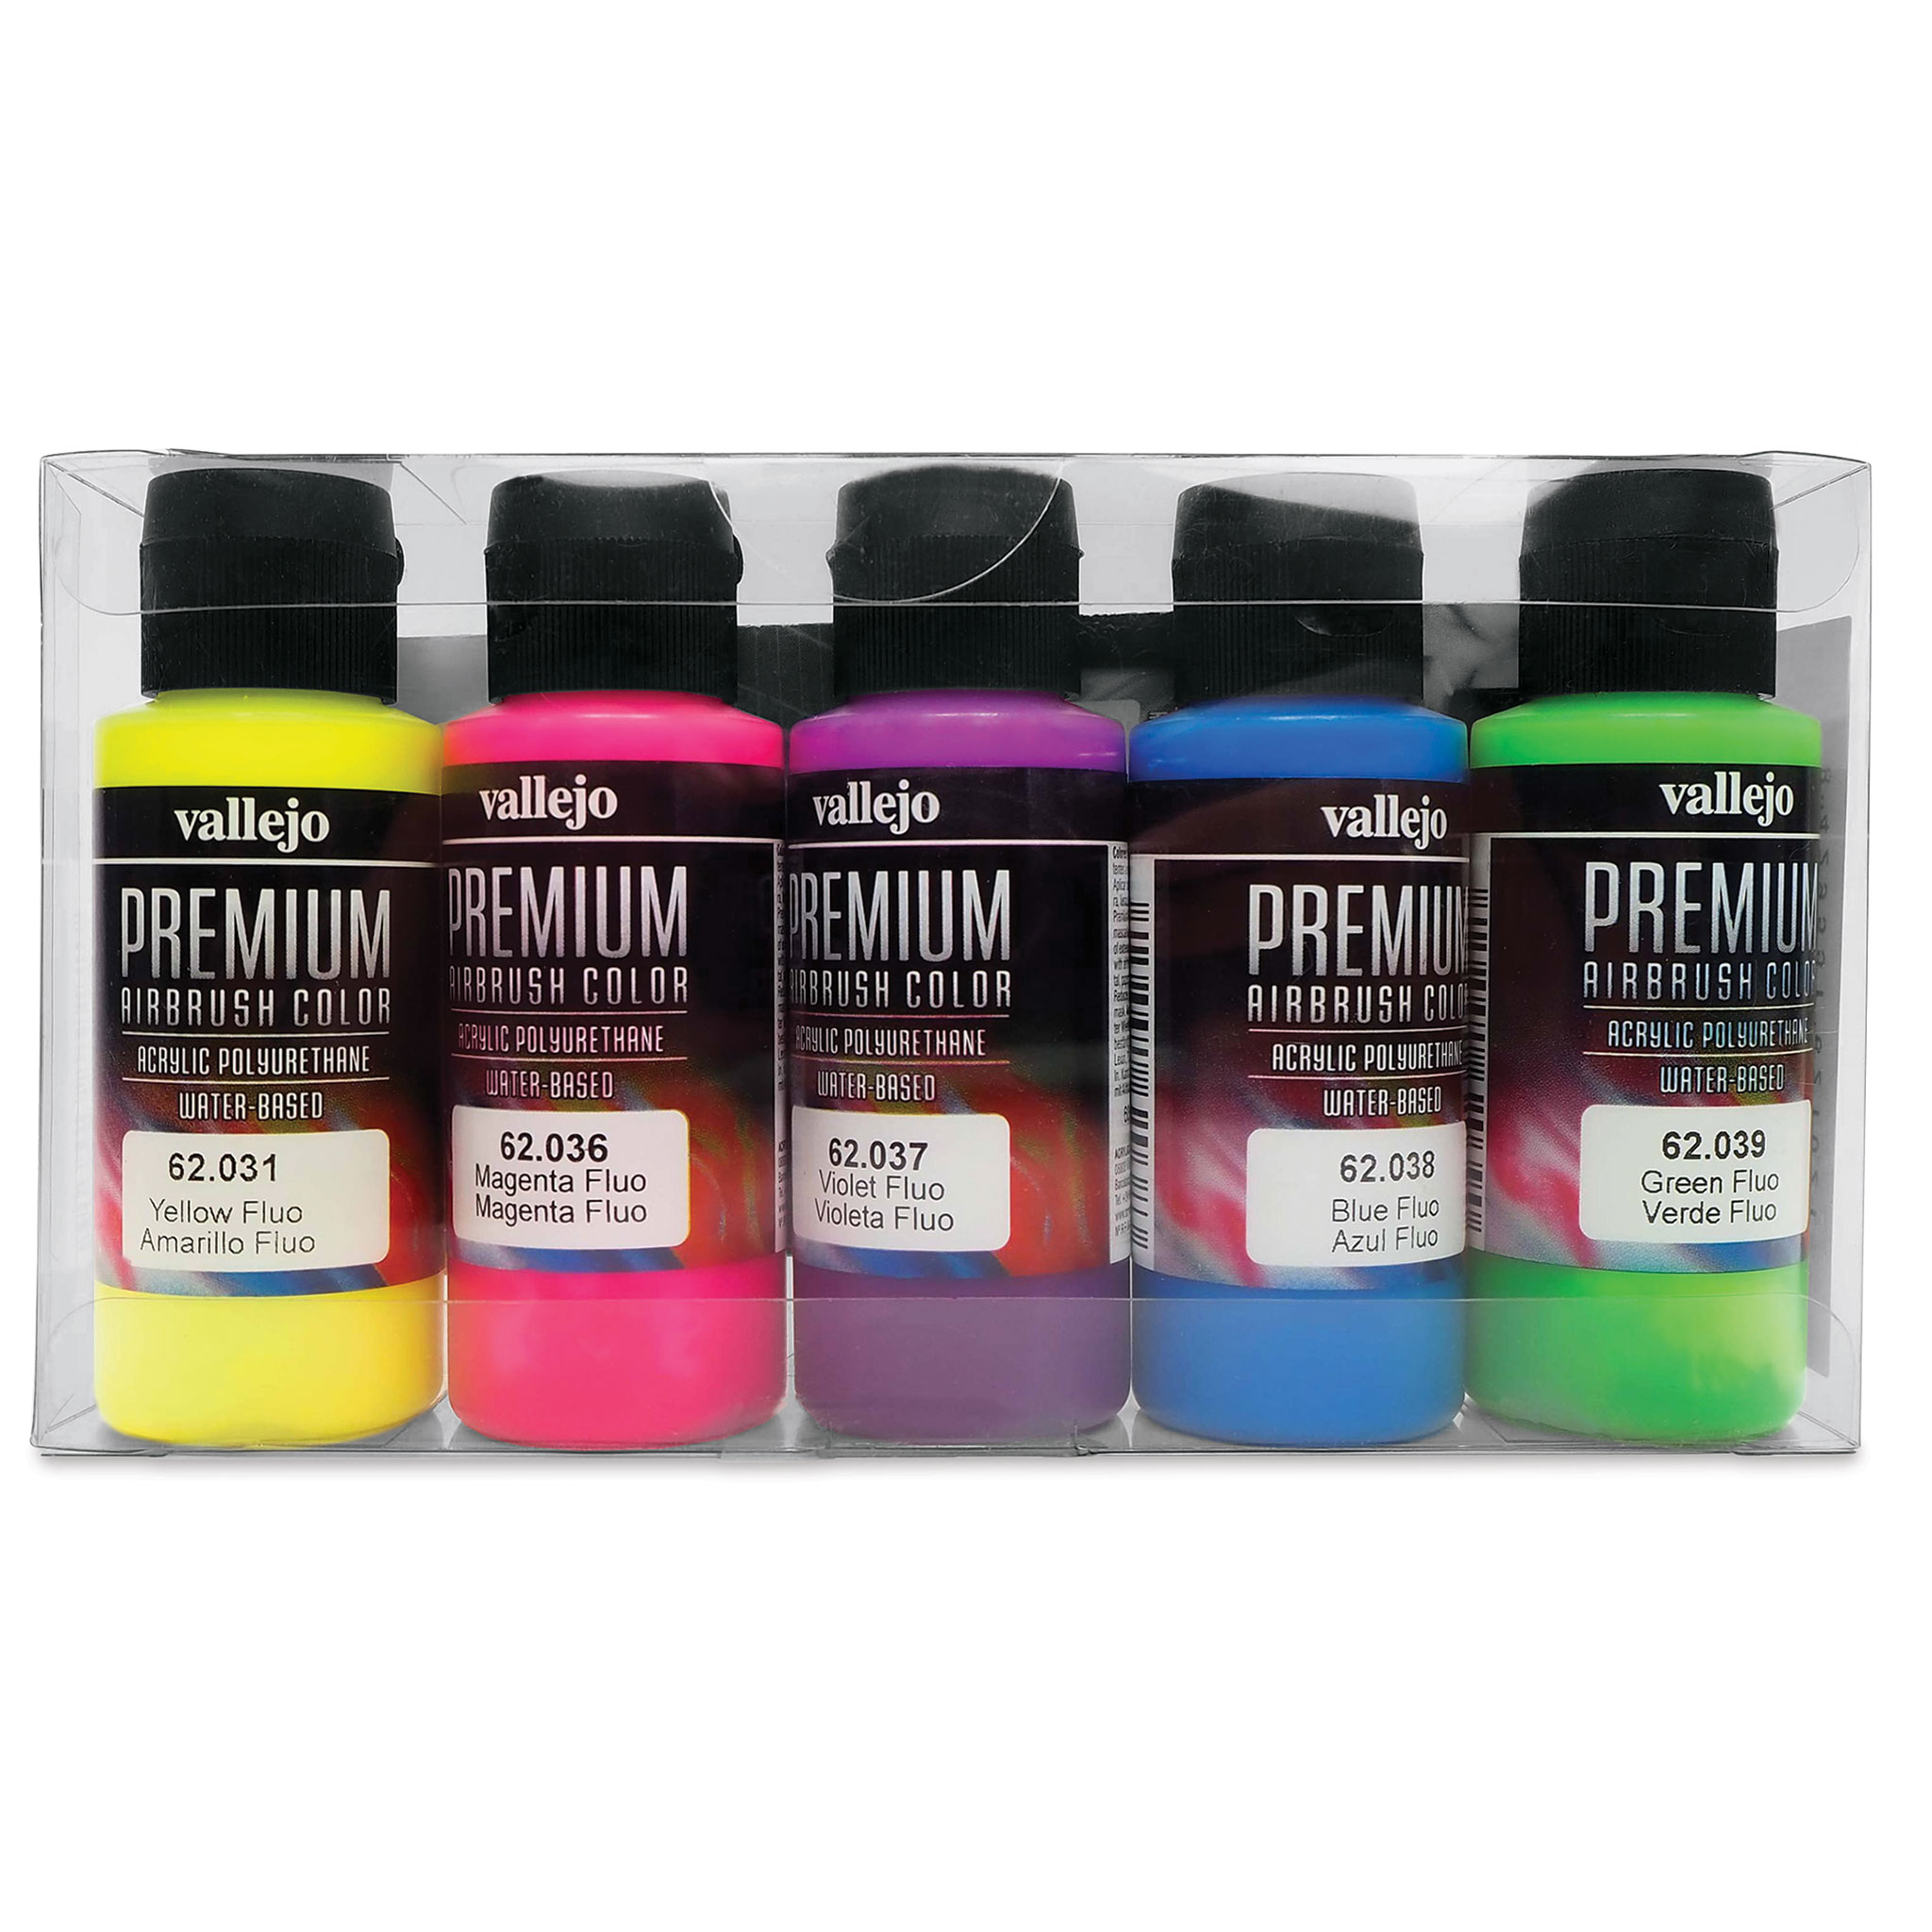 Vallejo Premium Airbrush Paint : Set Of 5 : Metallic Colors